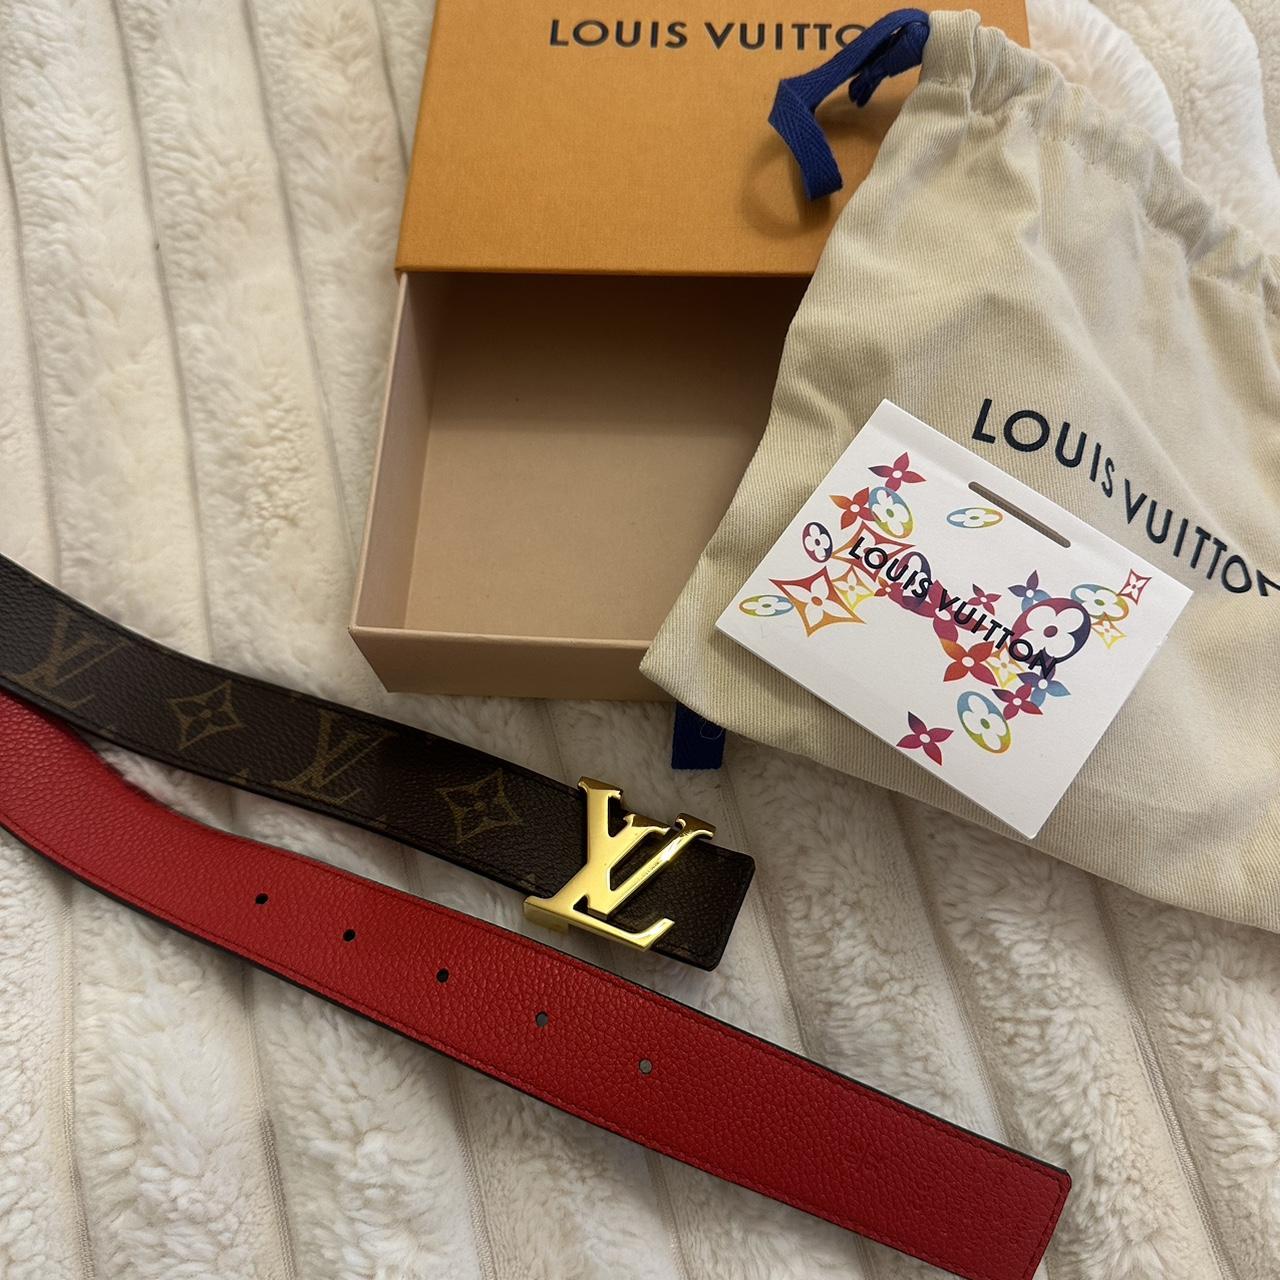 Lv belt 34 inch #louisvuitton #lv #virgilabloh #lvbelt - Depop